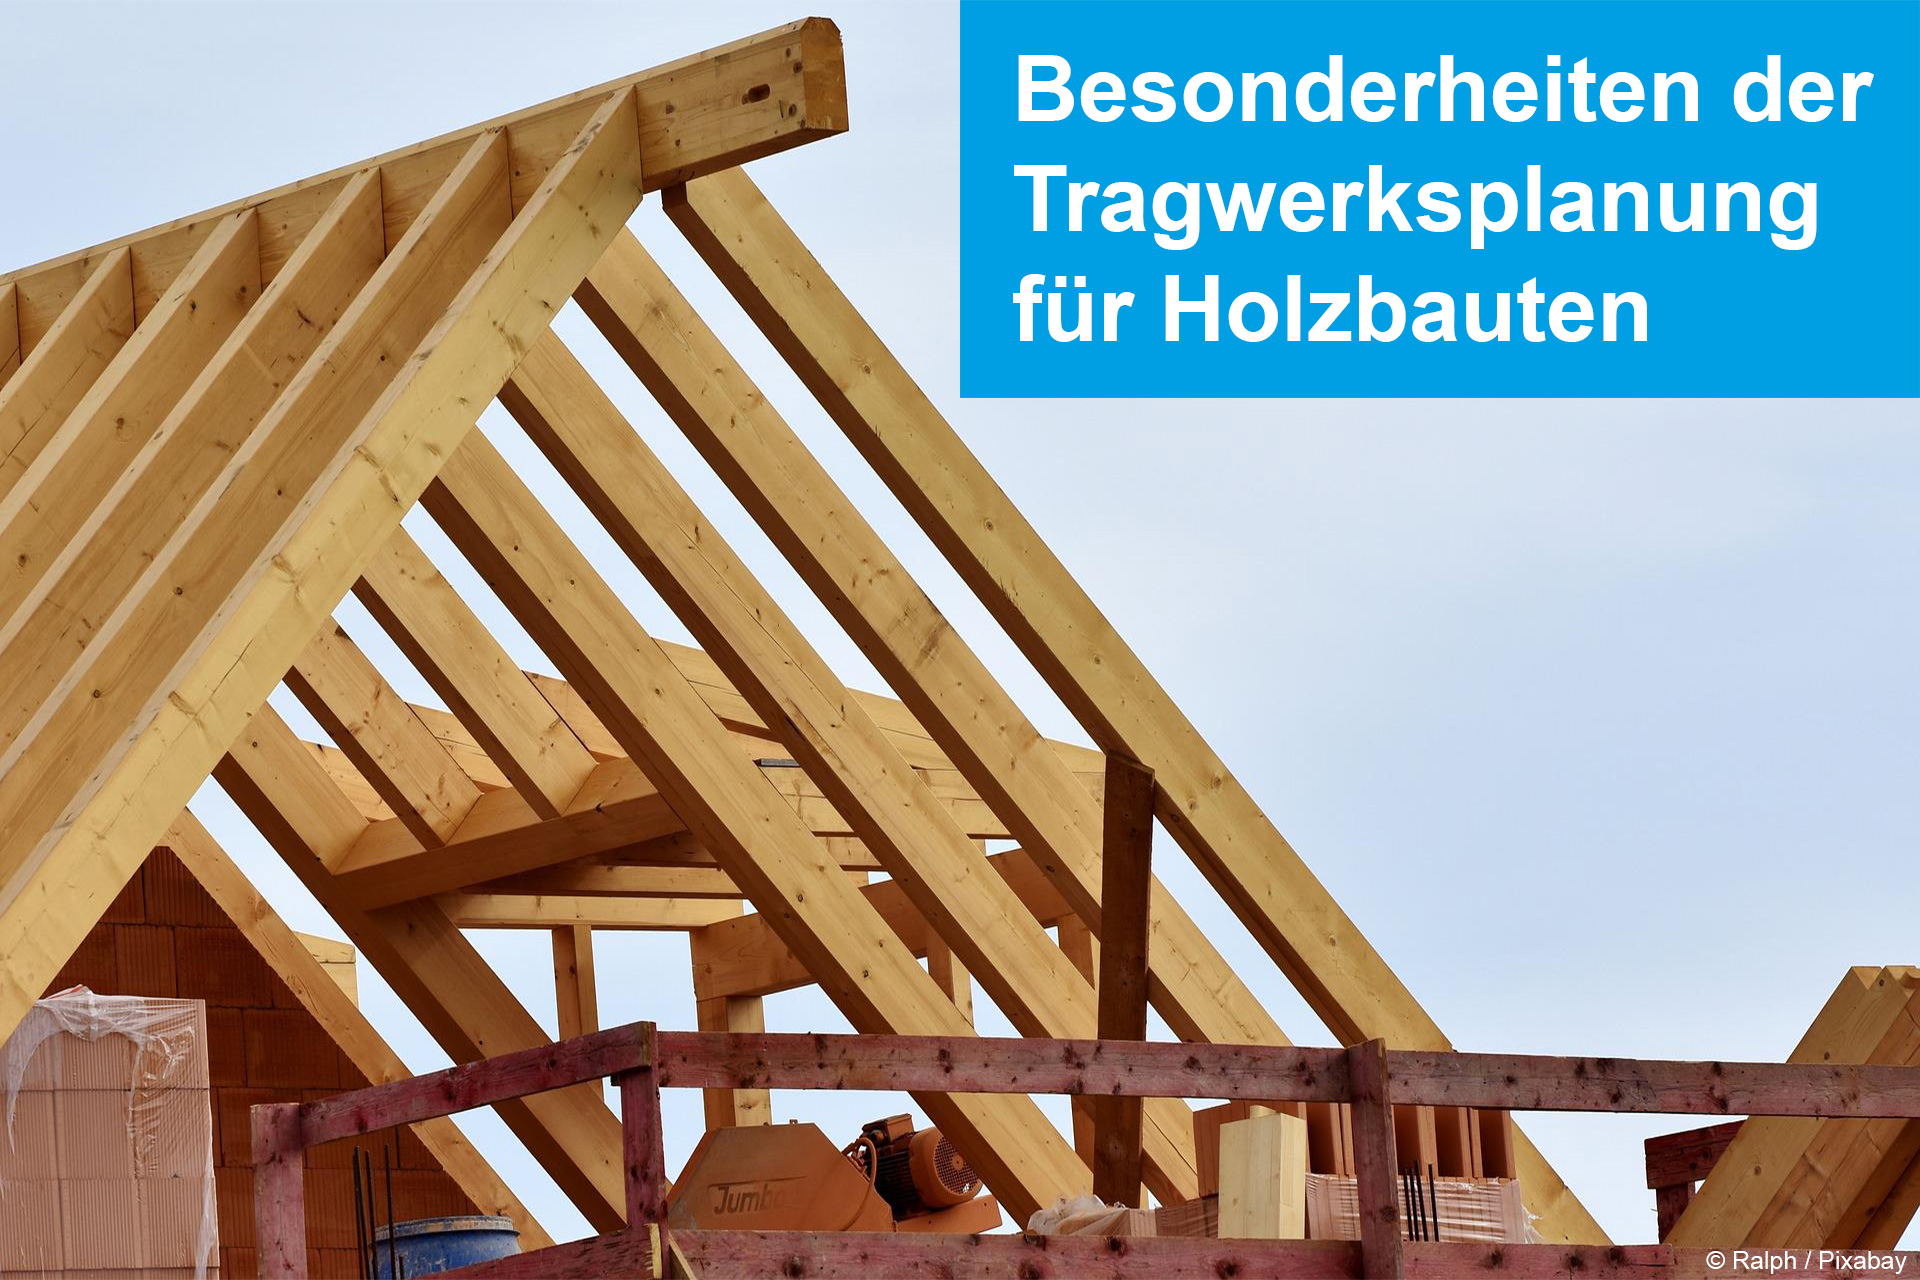 Besonderheiten der Tragwerksplanung für Holzbauten